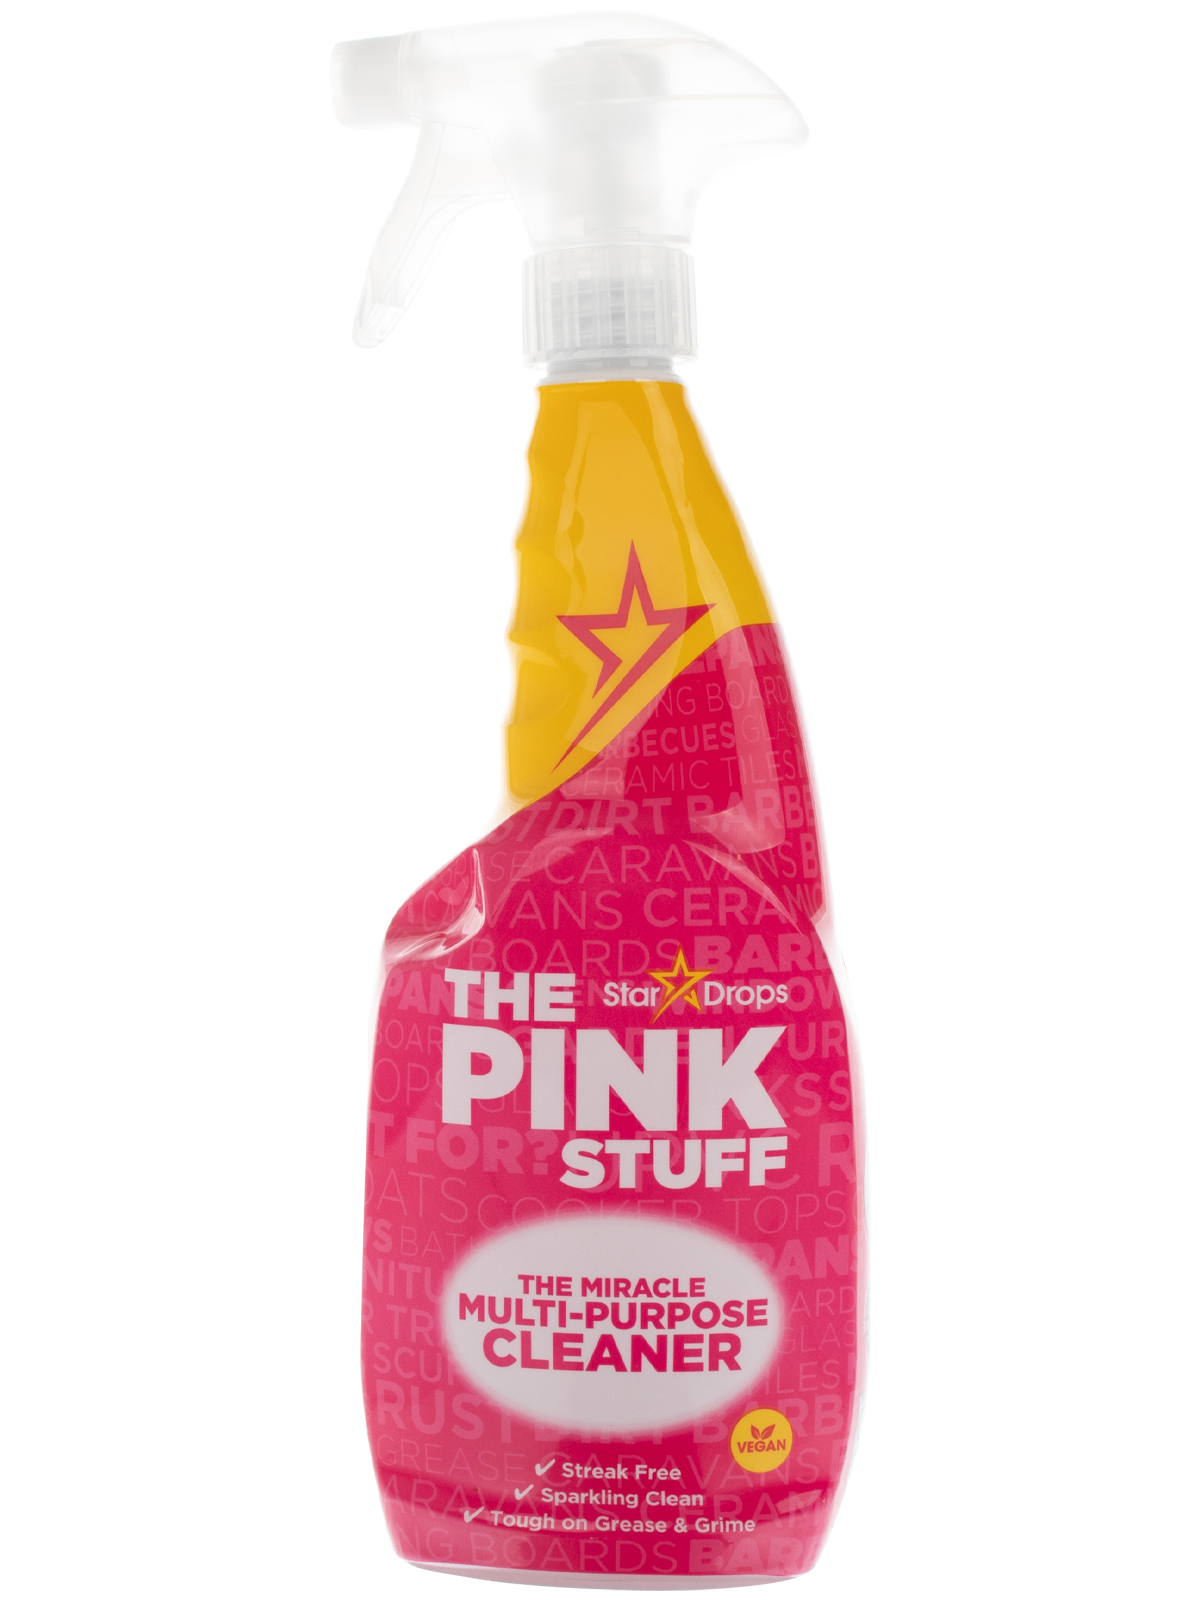 Pink Stuff - Wibra Belgique - Vous faites ça bien.